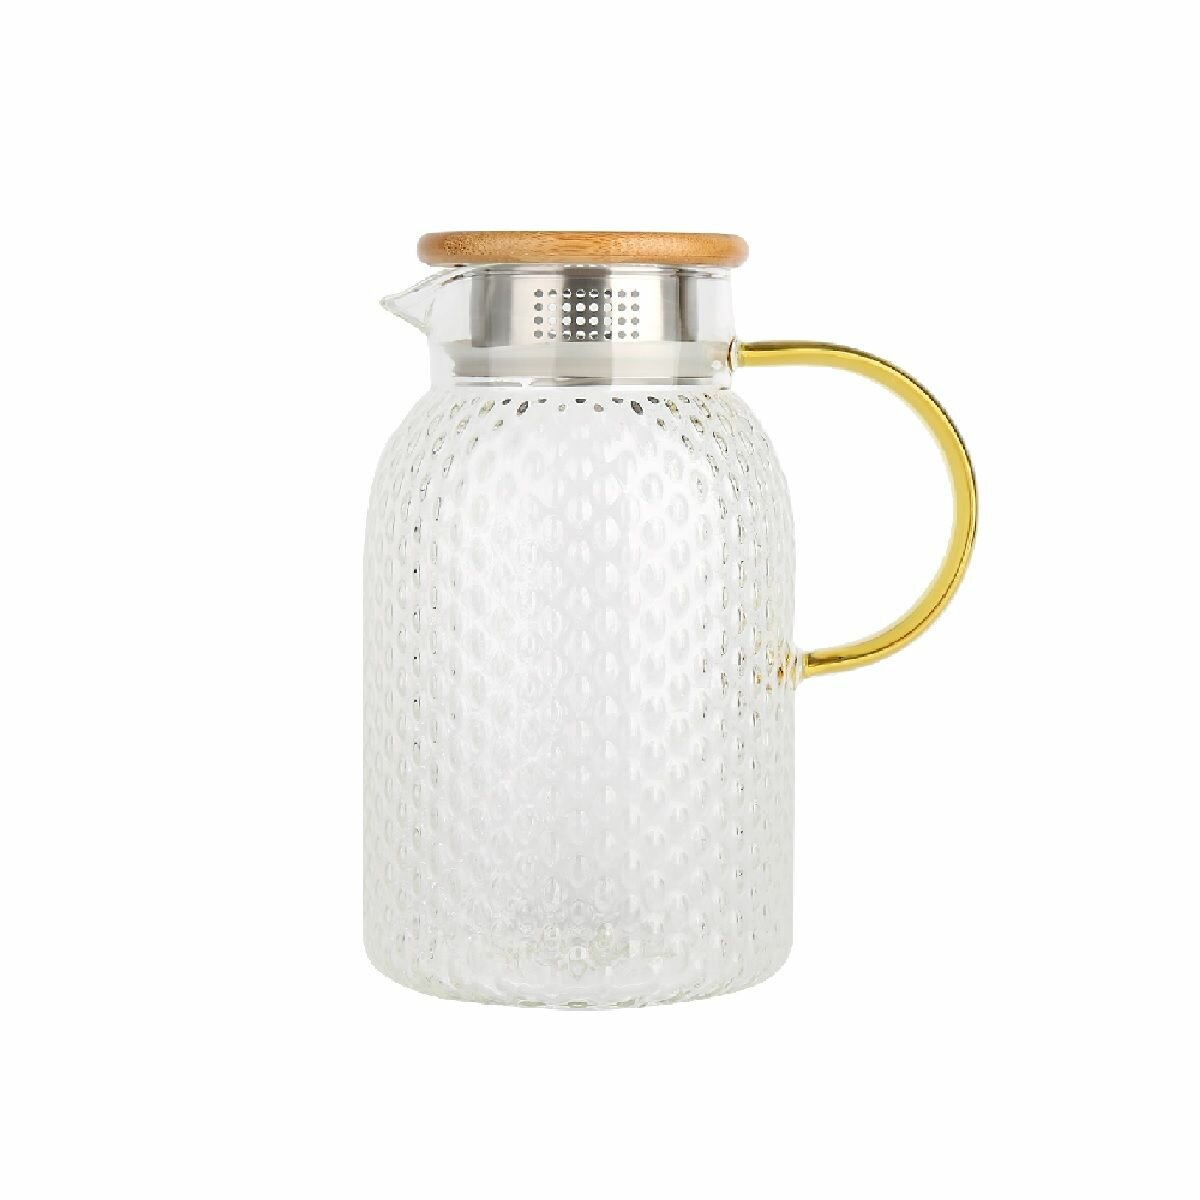 Заварочный чайник-кувшин стеклянный с фильтром 1,5 литра Rashel